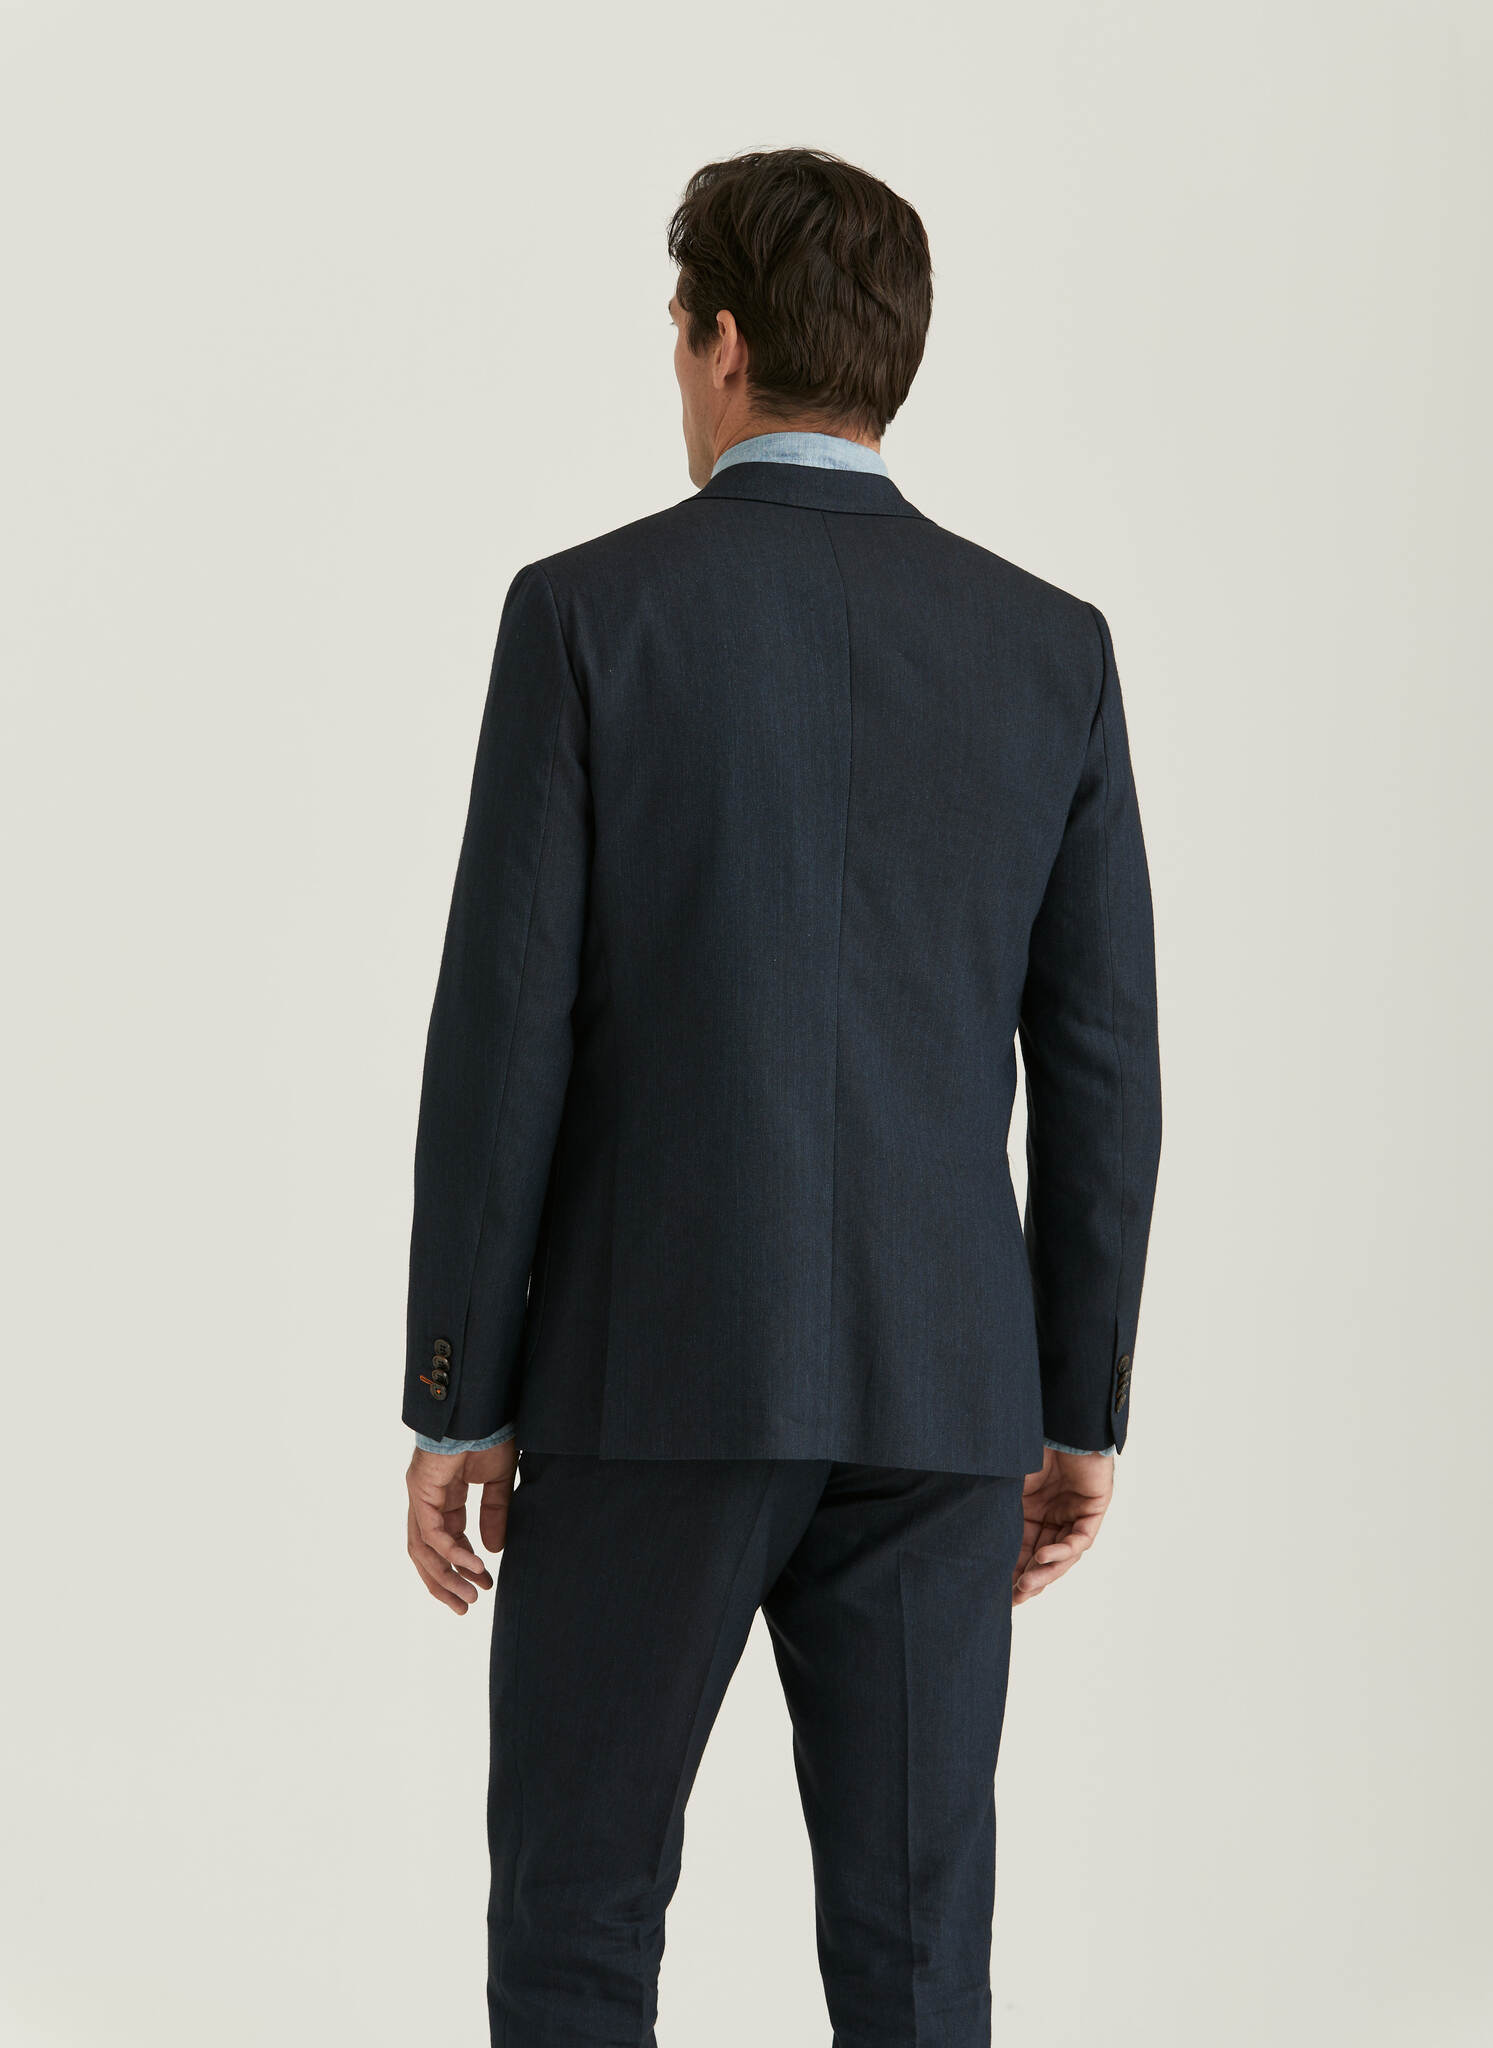 Morris - Archie Linen Suit Jkt, Navy